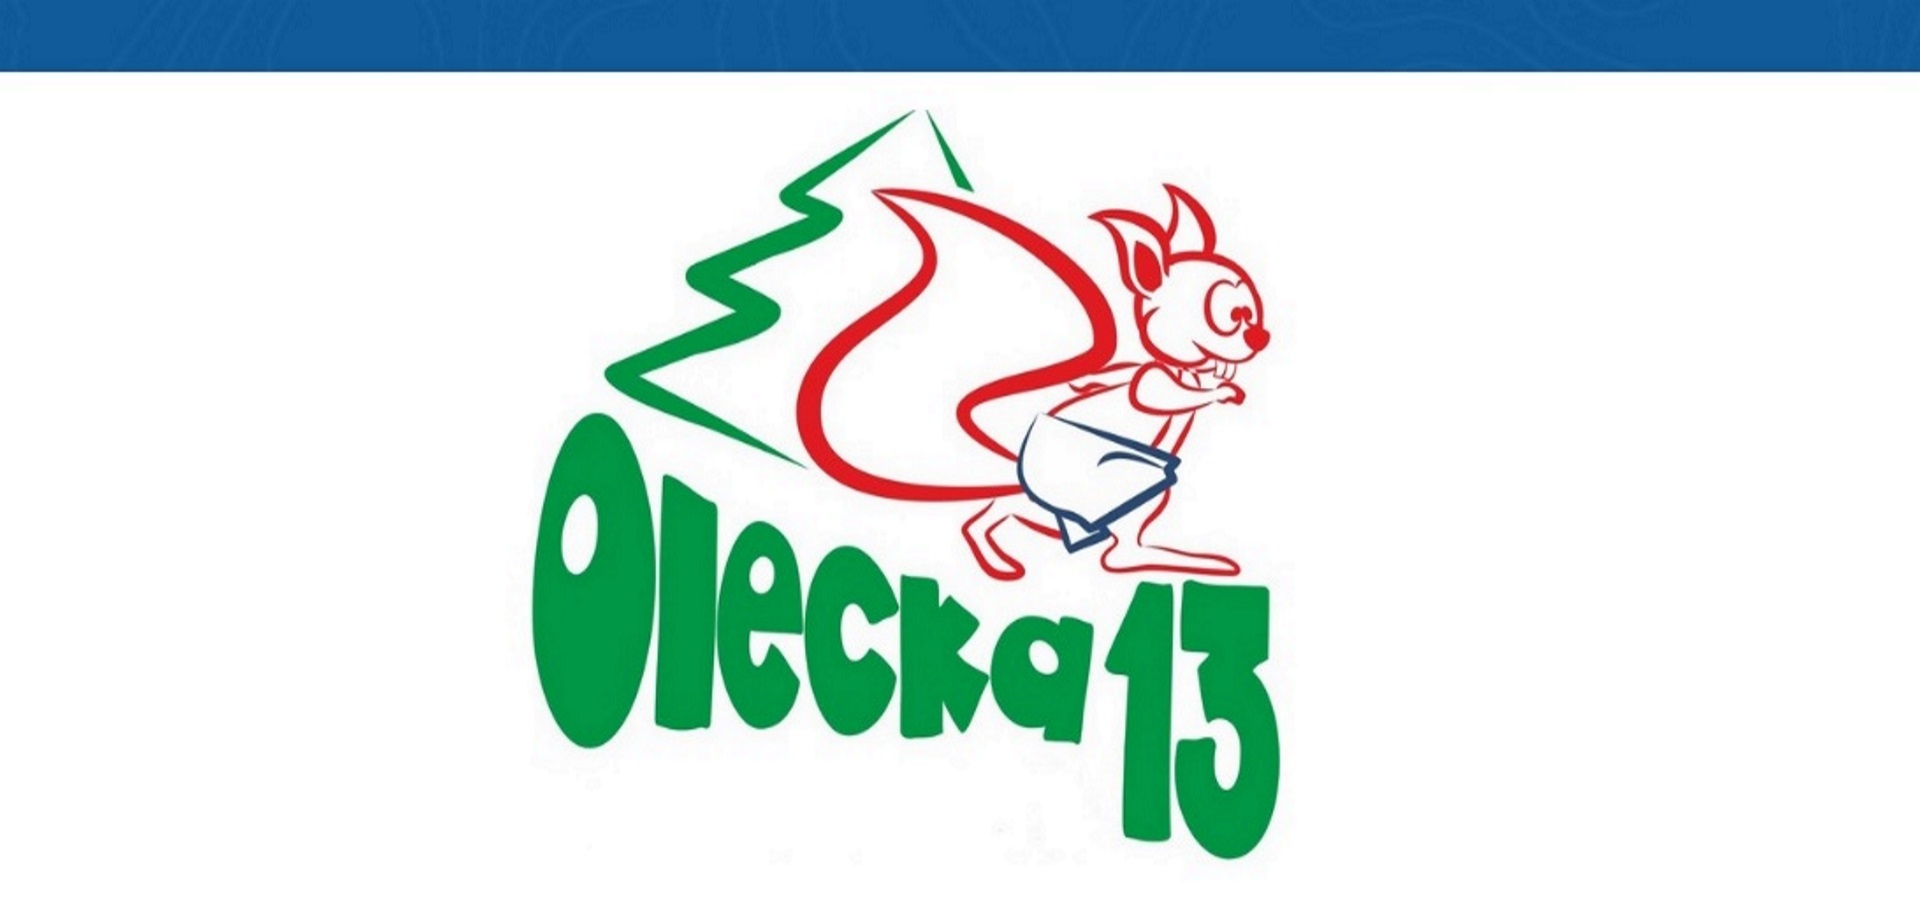 Plakat zapraszający do Olecka na kolejną edycję biegu Oleckiej Trzynastki. 